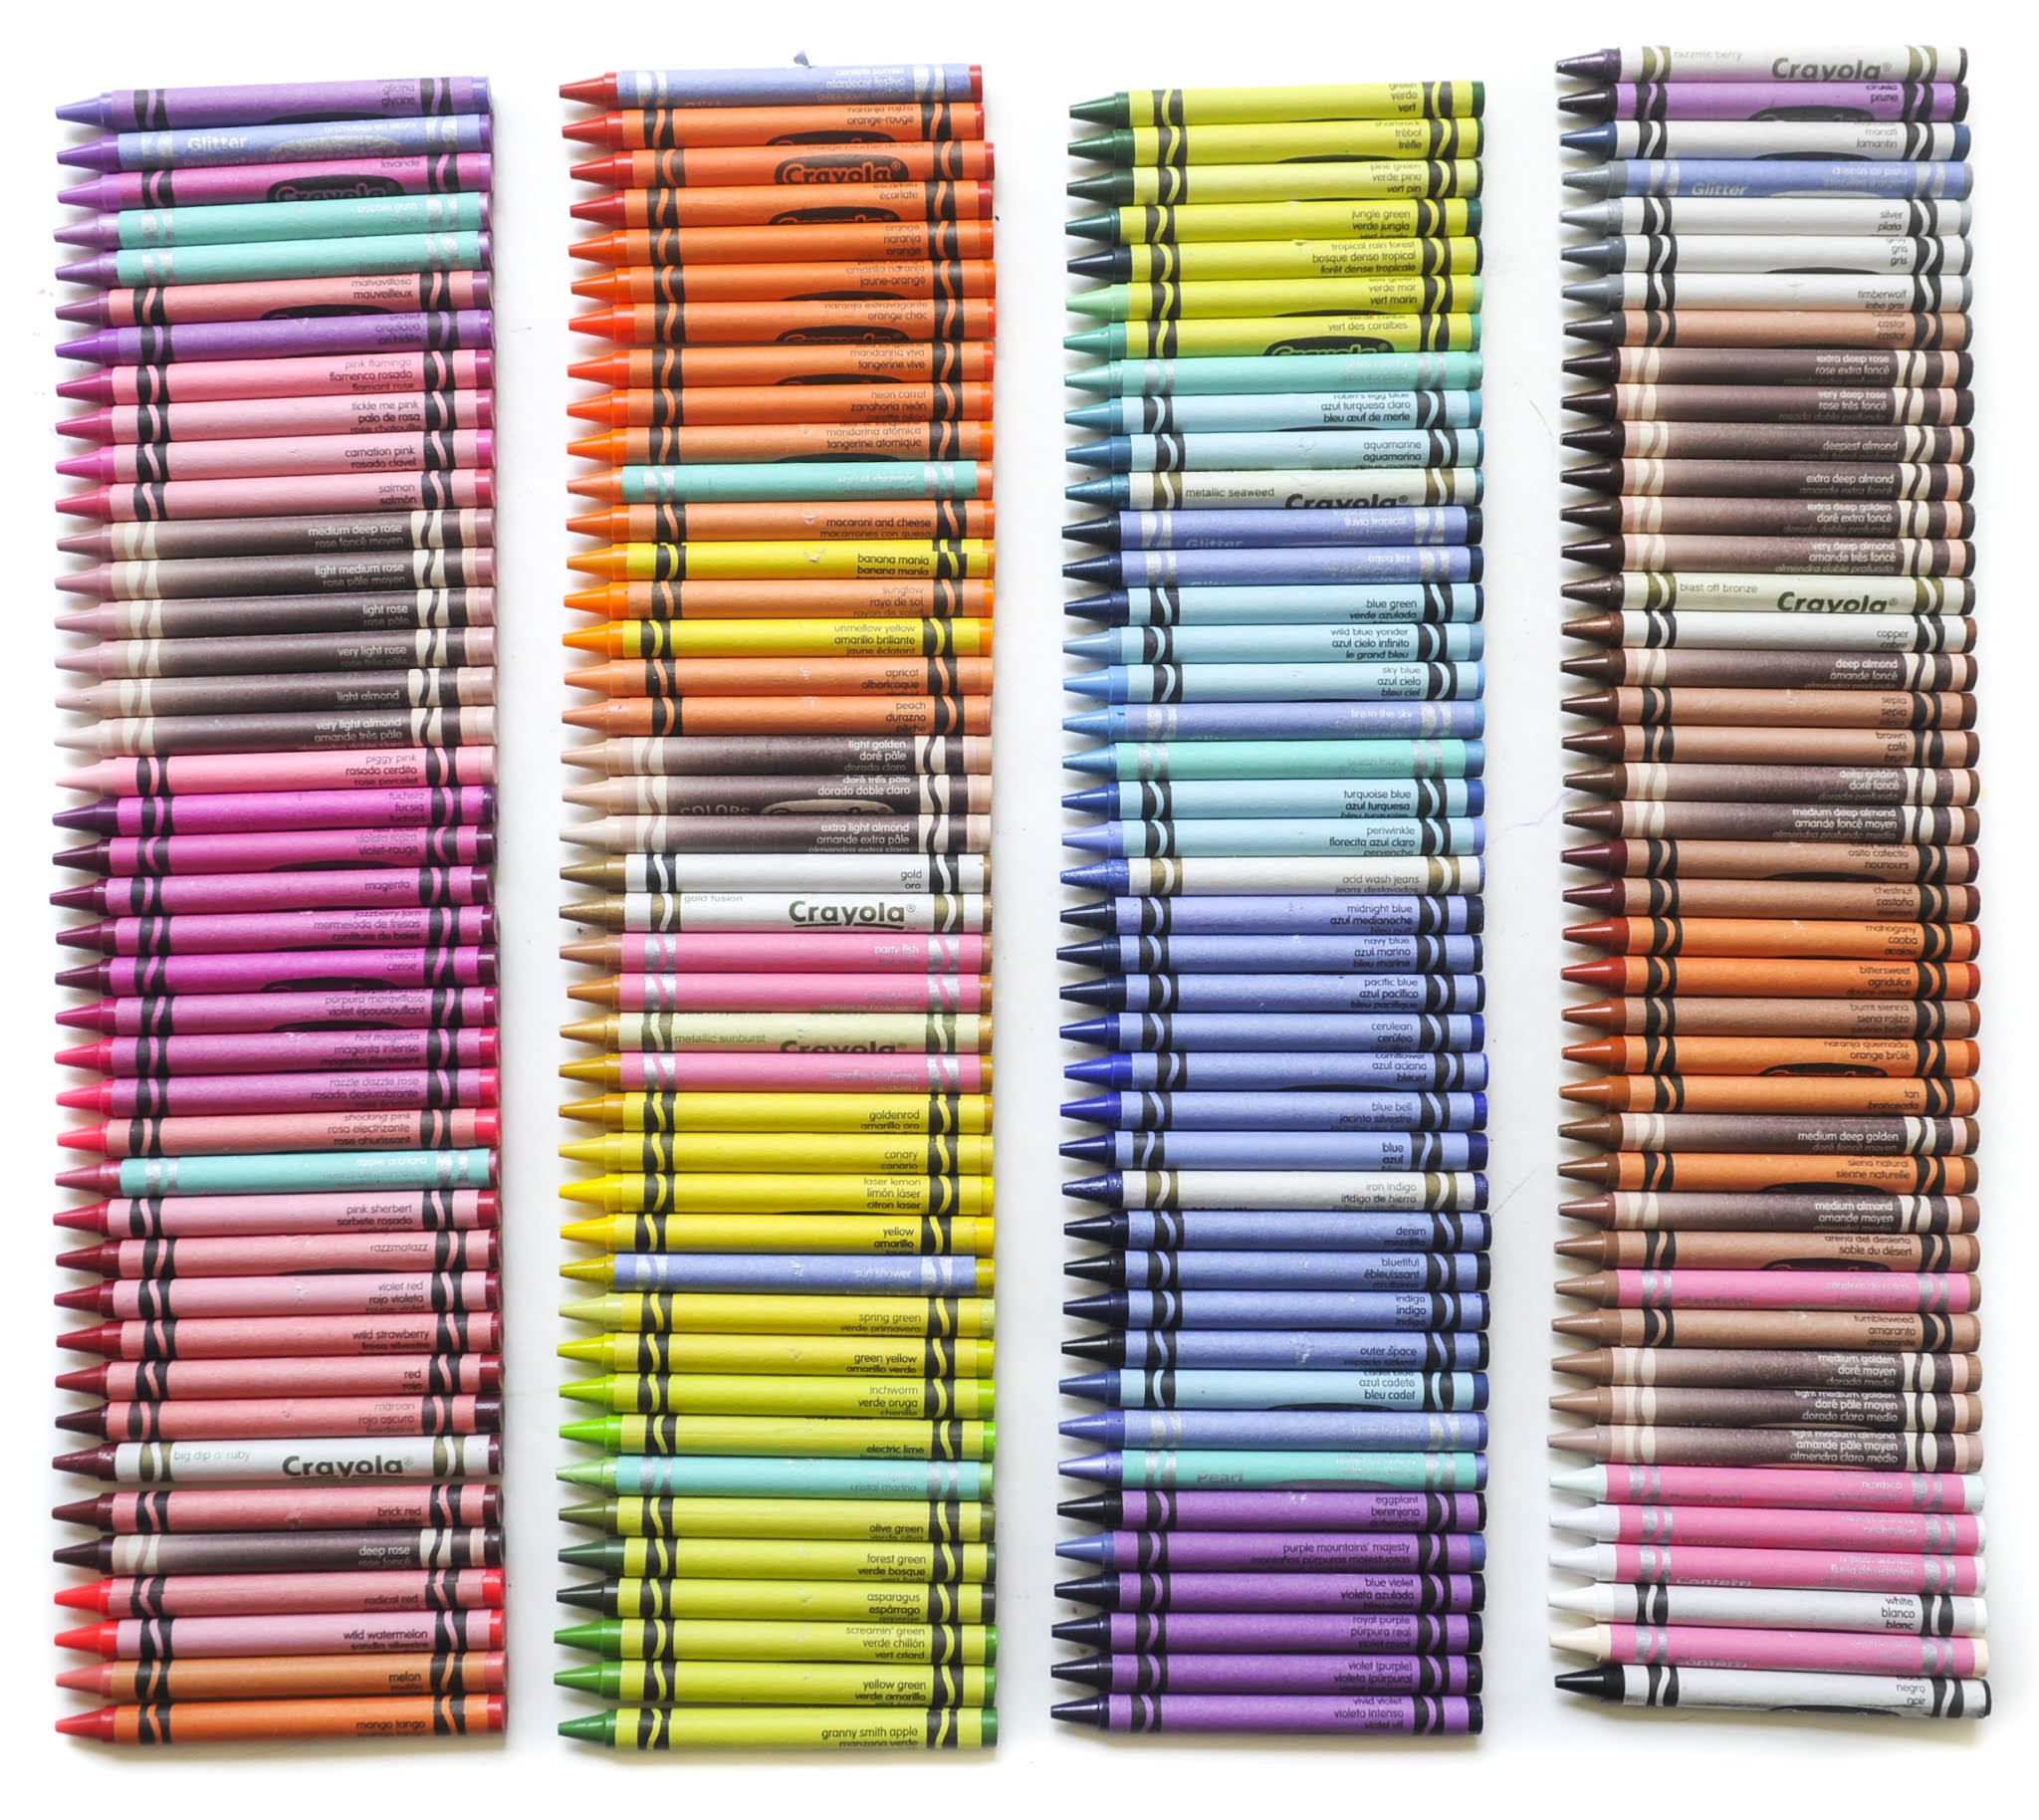 Set De 168 Crayones Crayolas Punta Fina Multicolor